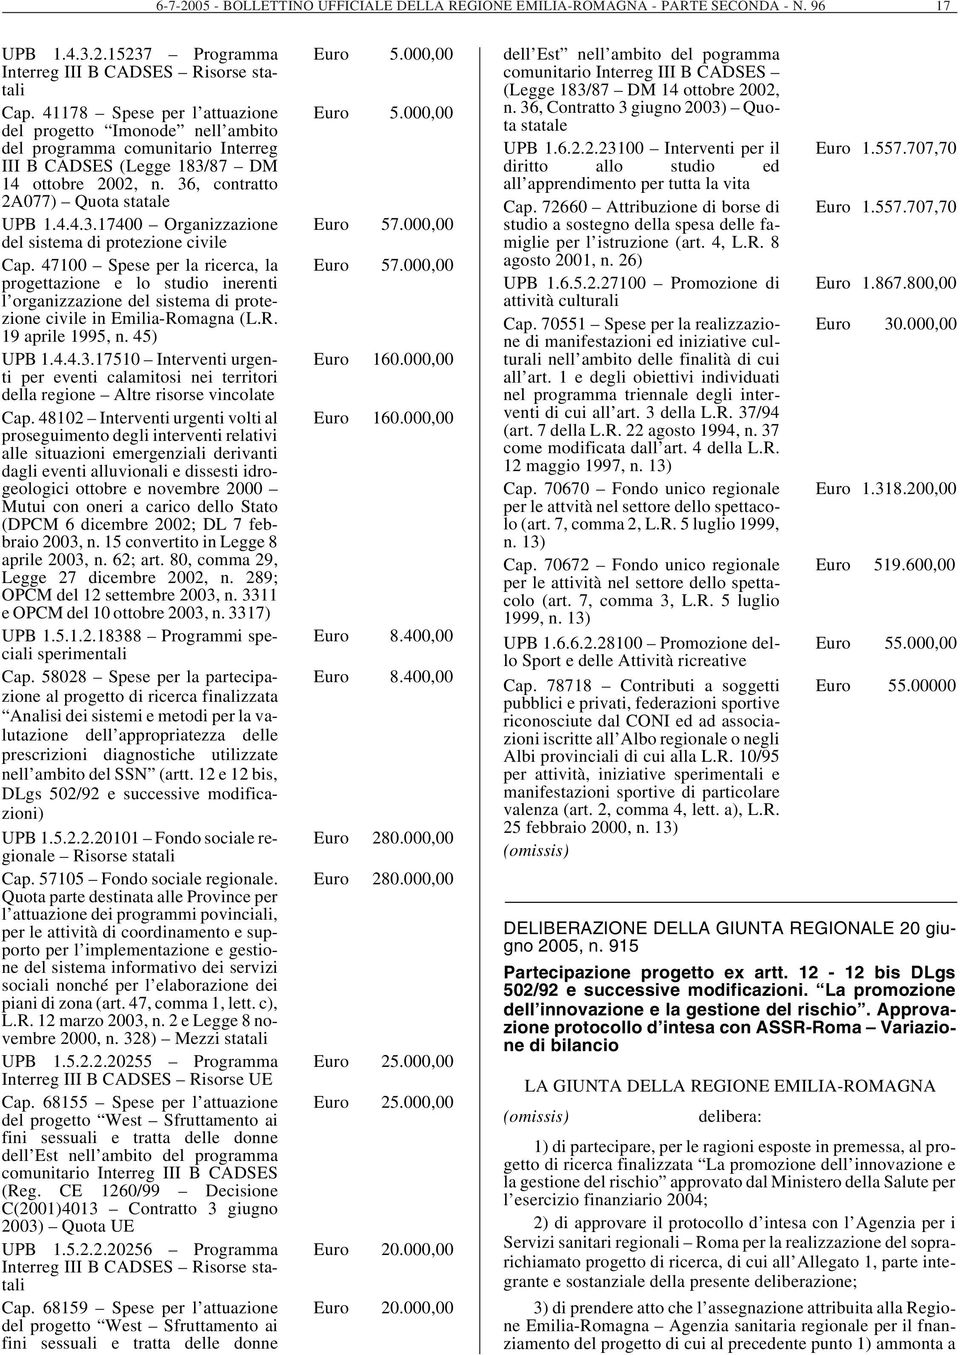 47100 Spese per la ricerca, la progettazione e lo studio inerenti l organizzazione del sistema di protezione civile in Emilia-Romagna (L.R. 19 aprile 1995, n. 45) UPB 1.4.4.3.